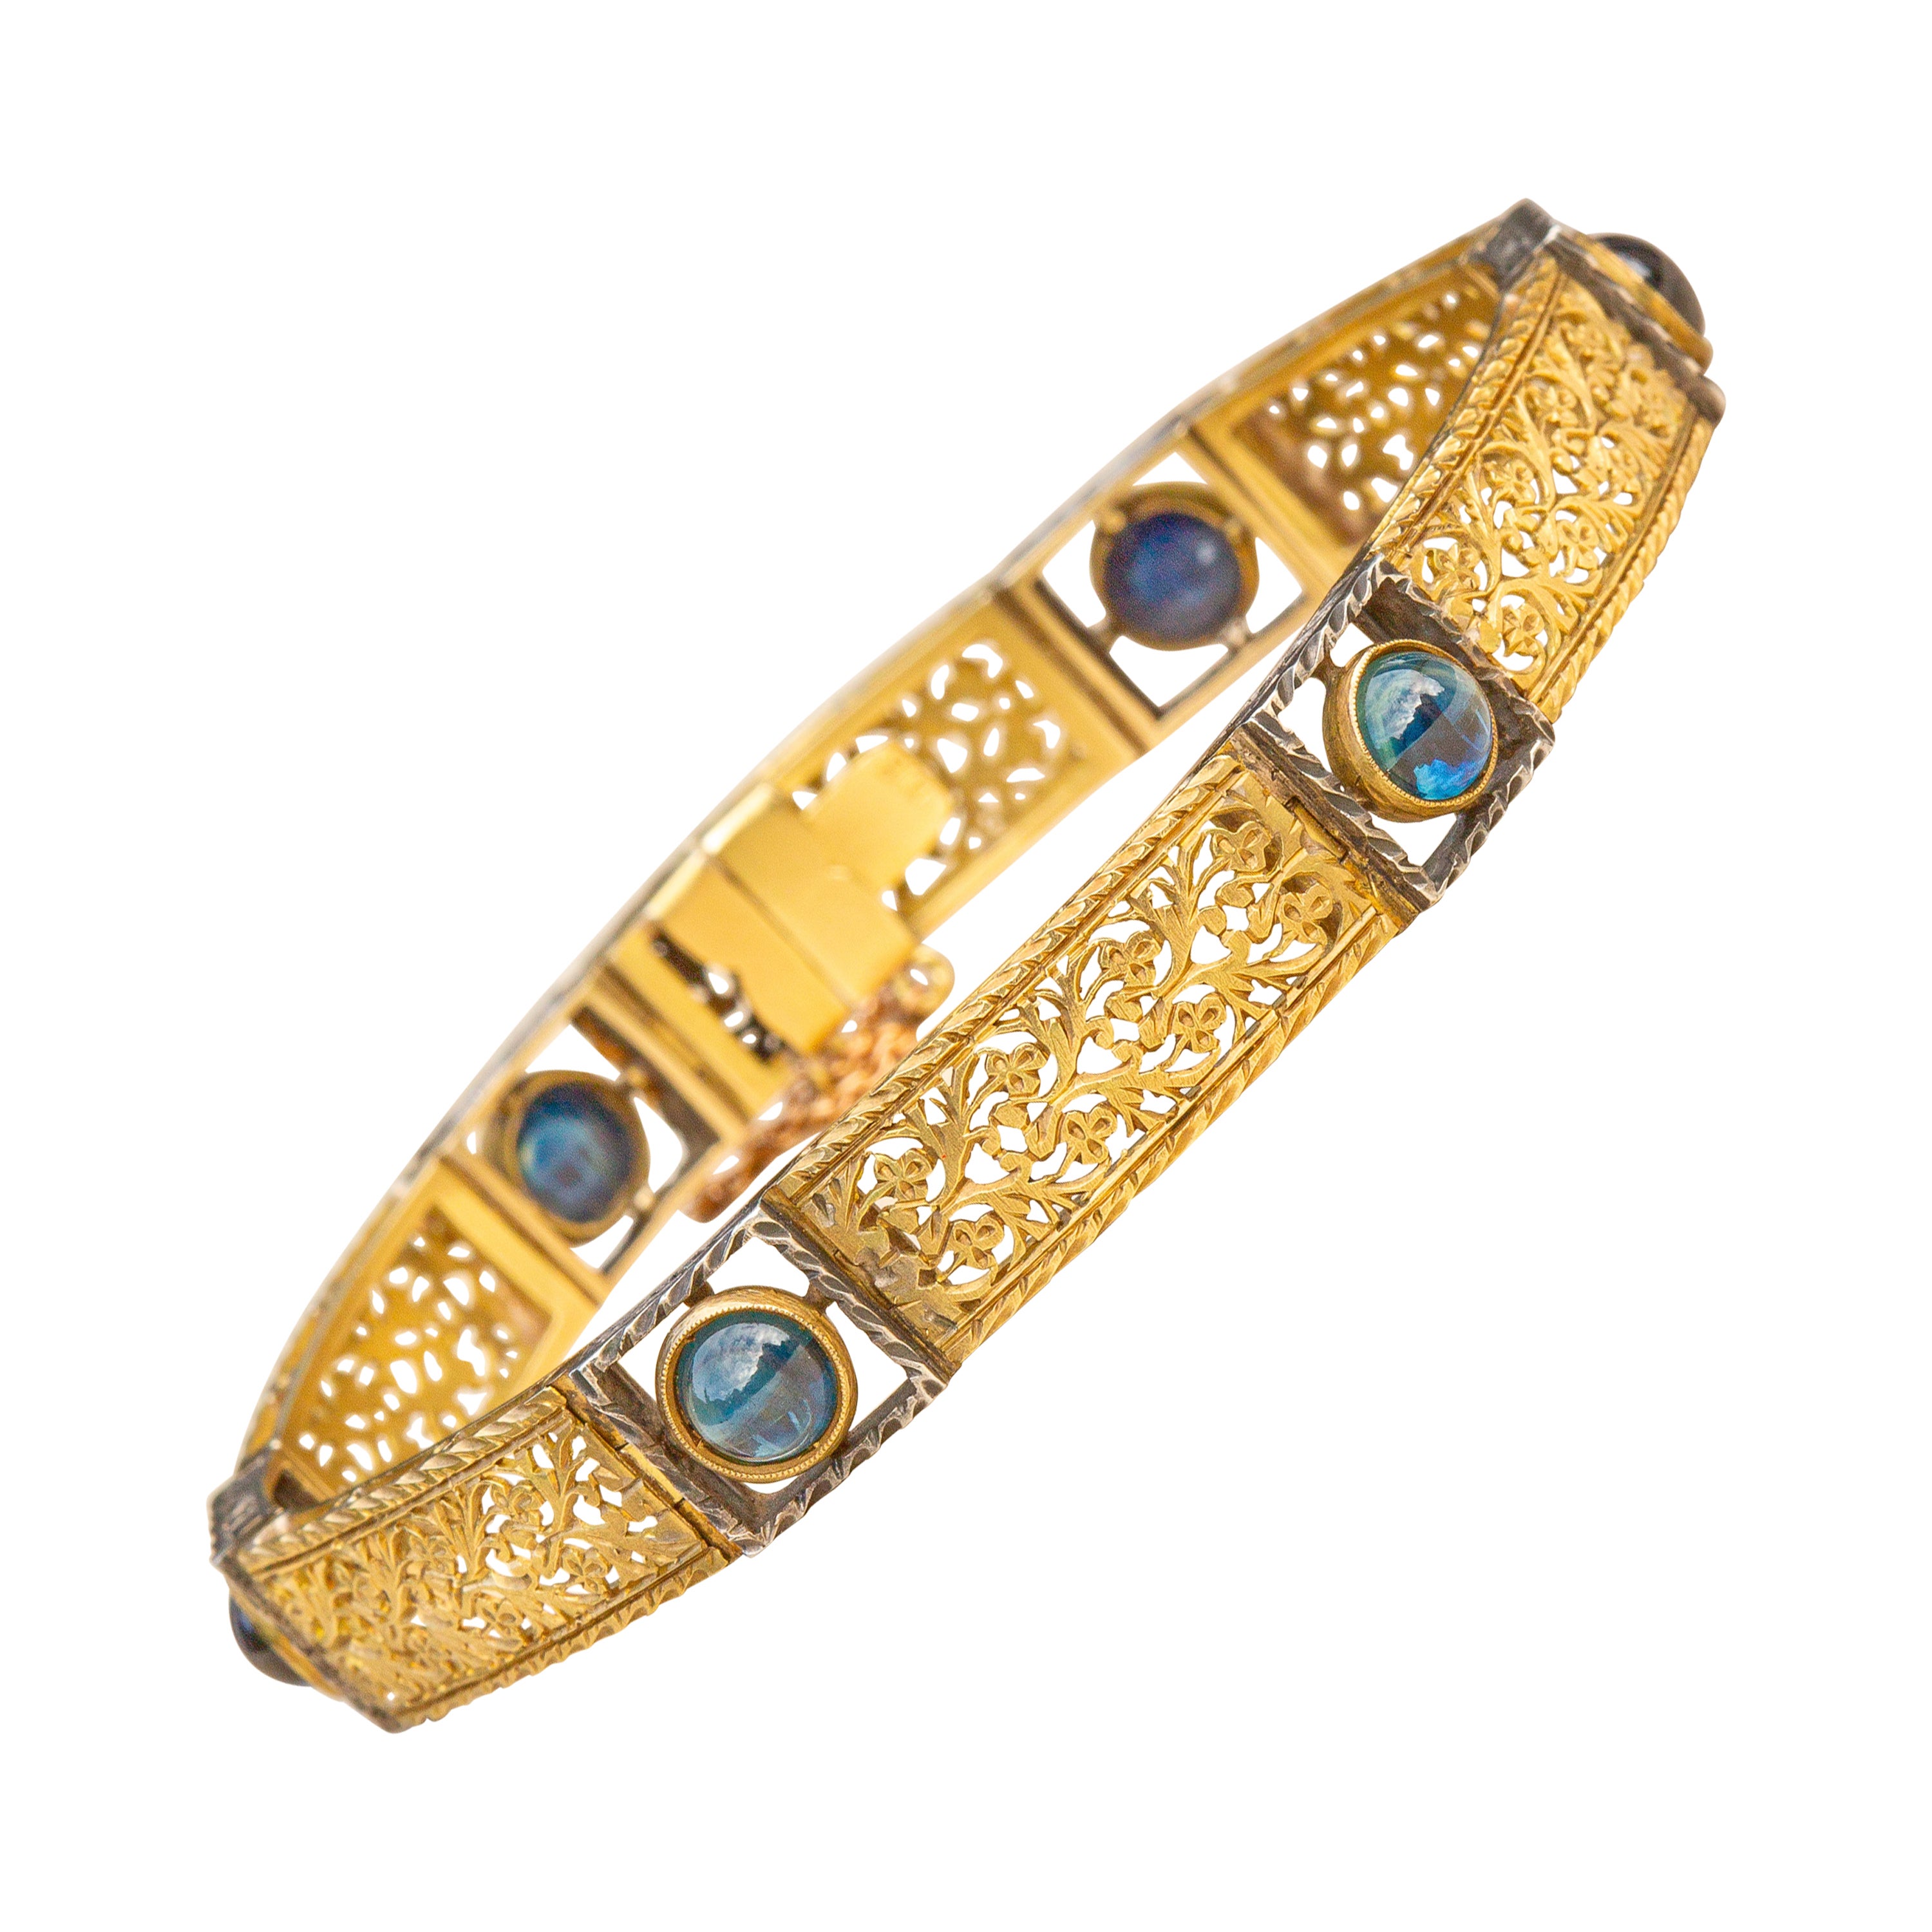 Antique Art Nouveau 18K Gold Bracelet with Sapphires c.1900